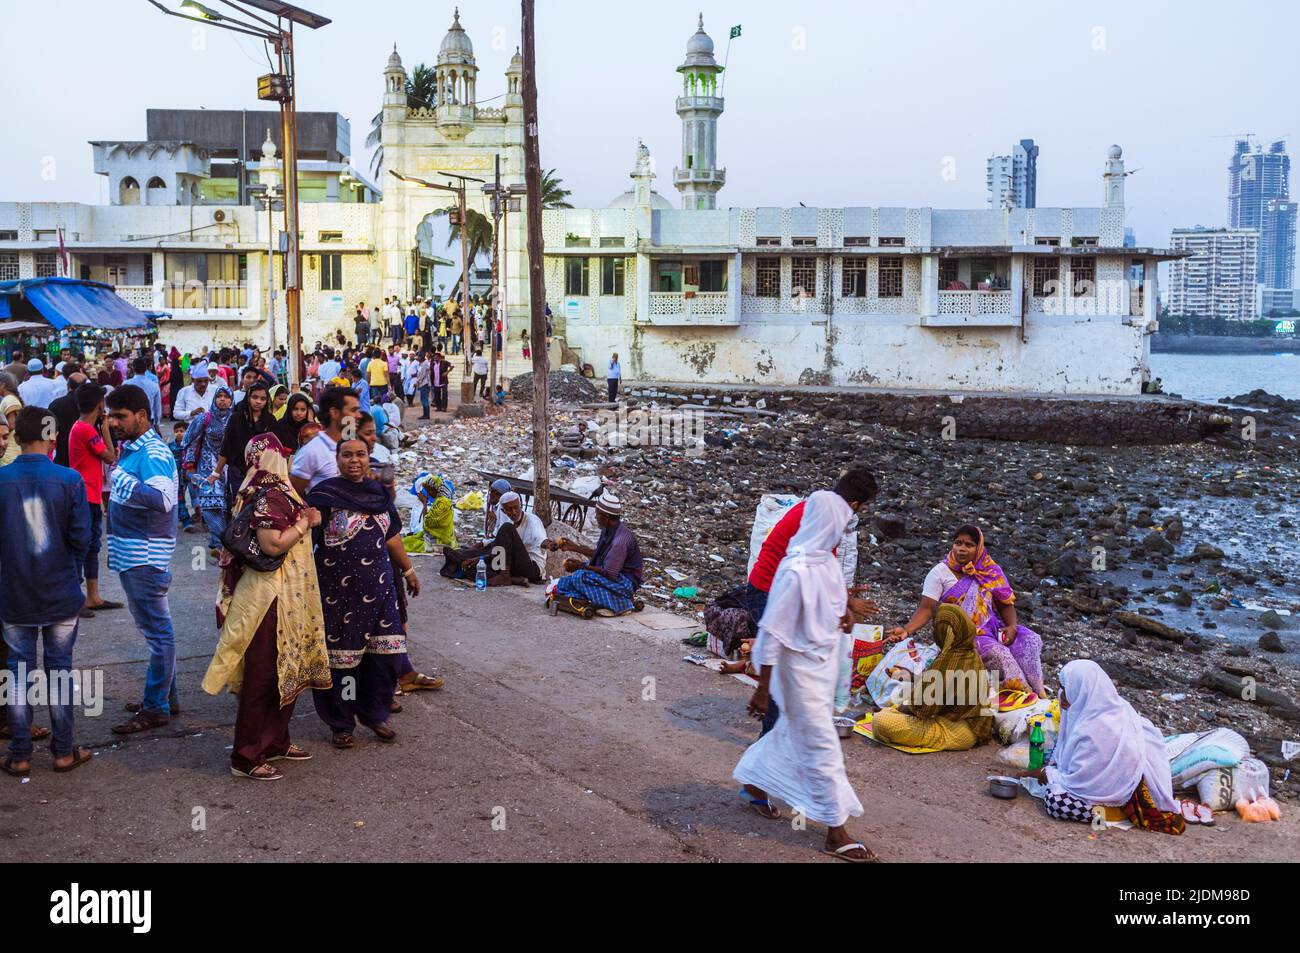 Mumbai, Maharashtra, India : Los peregrinos caminan pasando mendigos en la calzada que conduce al Haji Ali Dargah del siglo 19th y la mezquita que contiene la tumba Foto de stock